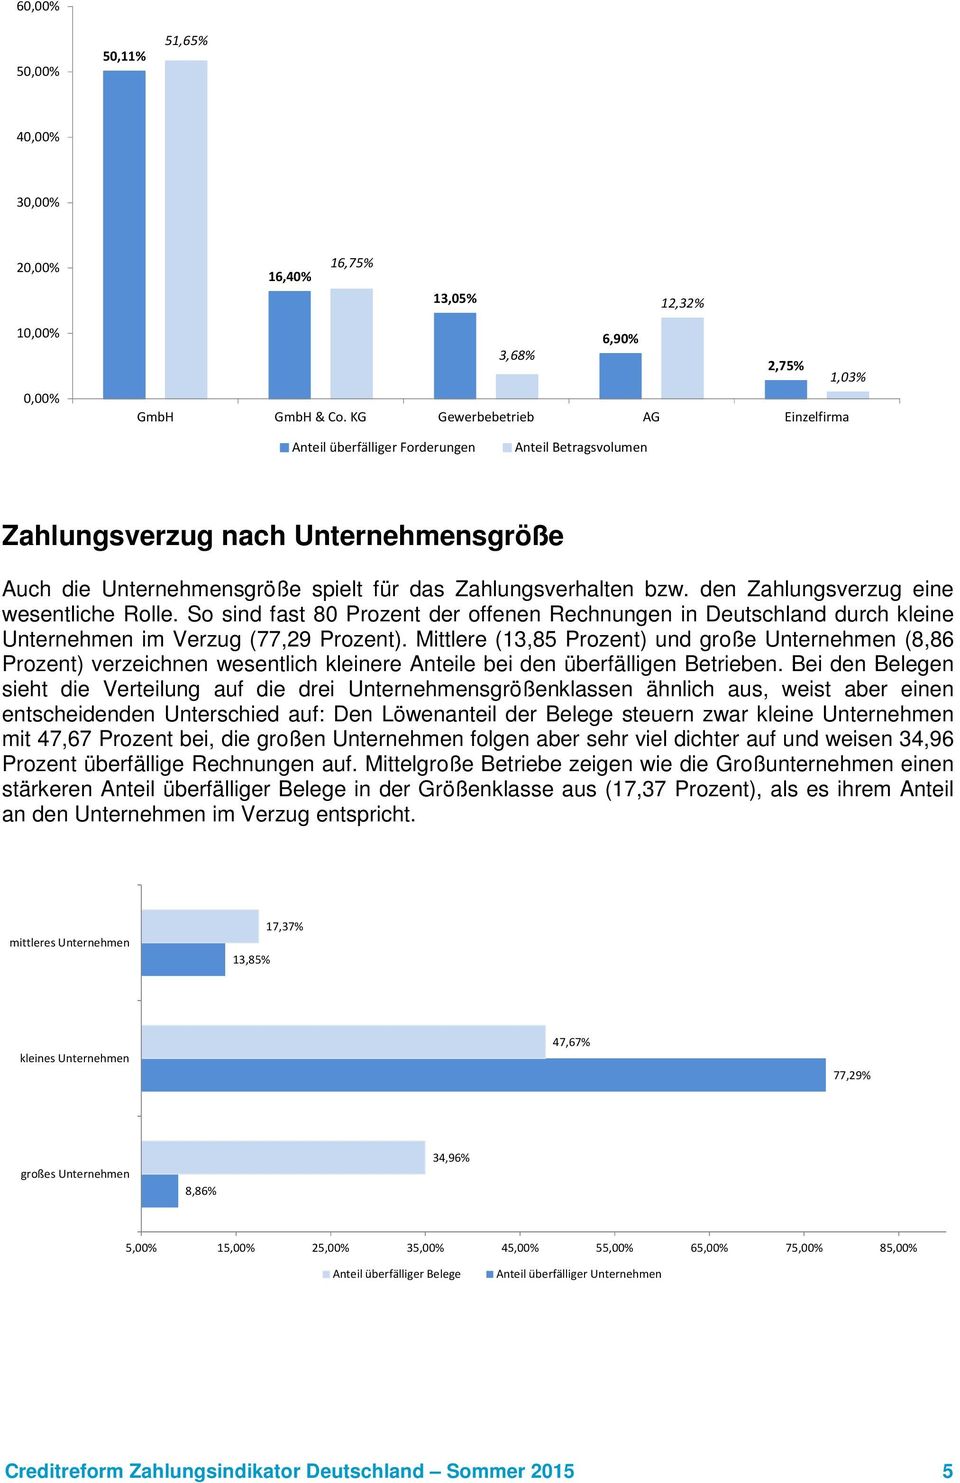 den Zahlungsverzug eine wesentliche Rolle. So sind fast 80 Prozent der offenen Rechnungen in Deutschland durch kleine Unternehmen im Verzug (77,29 Prozent).